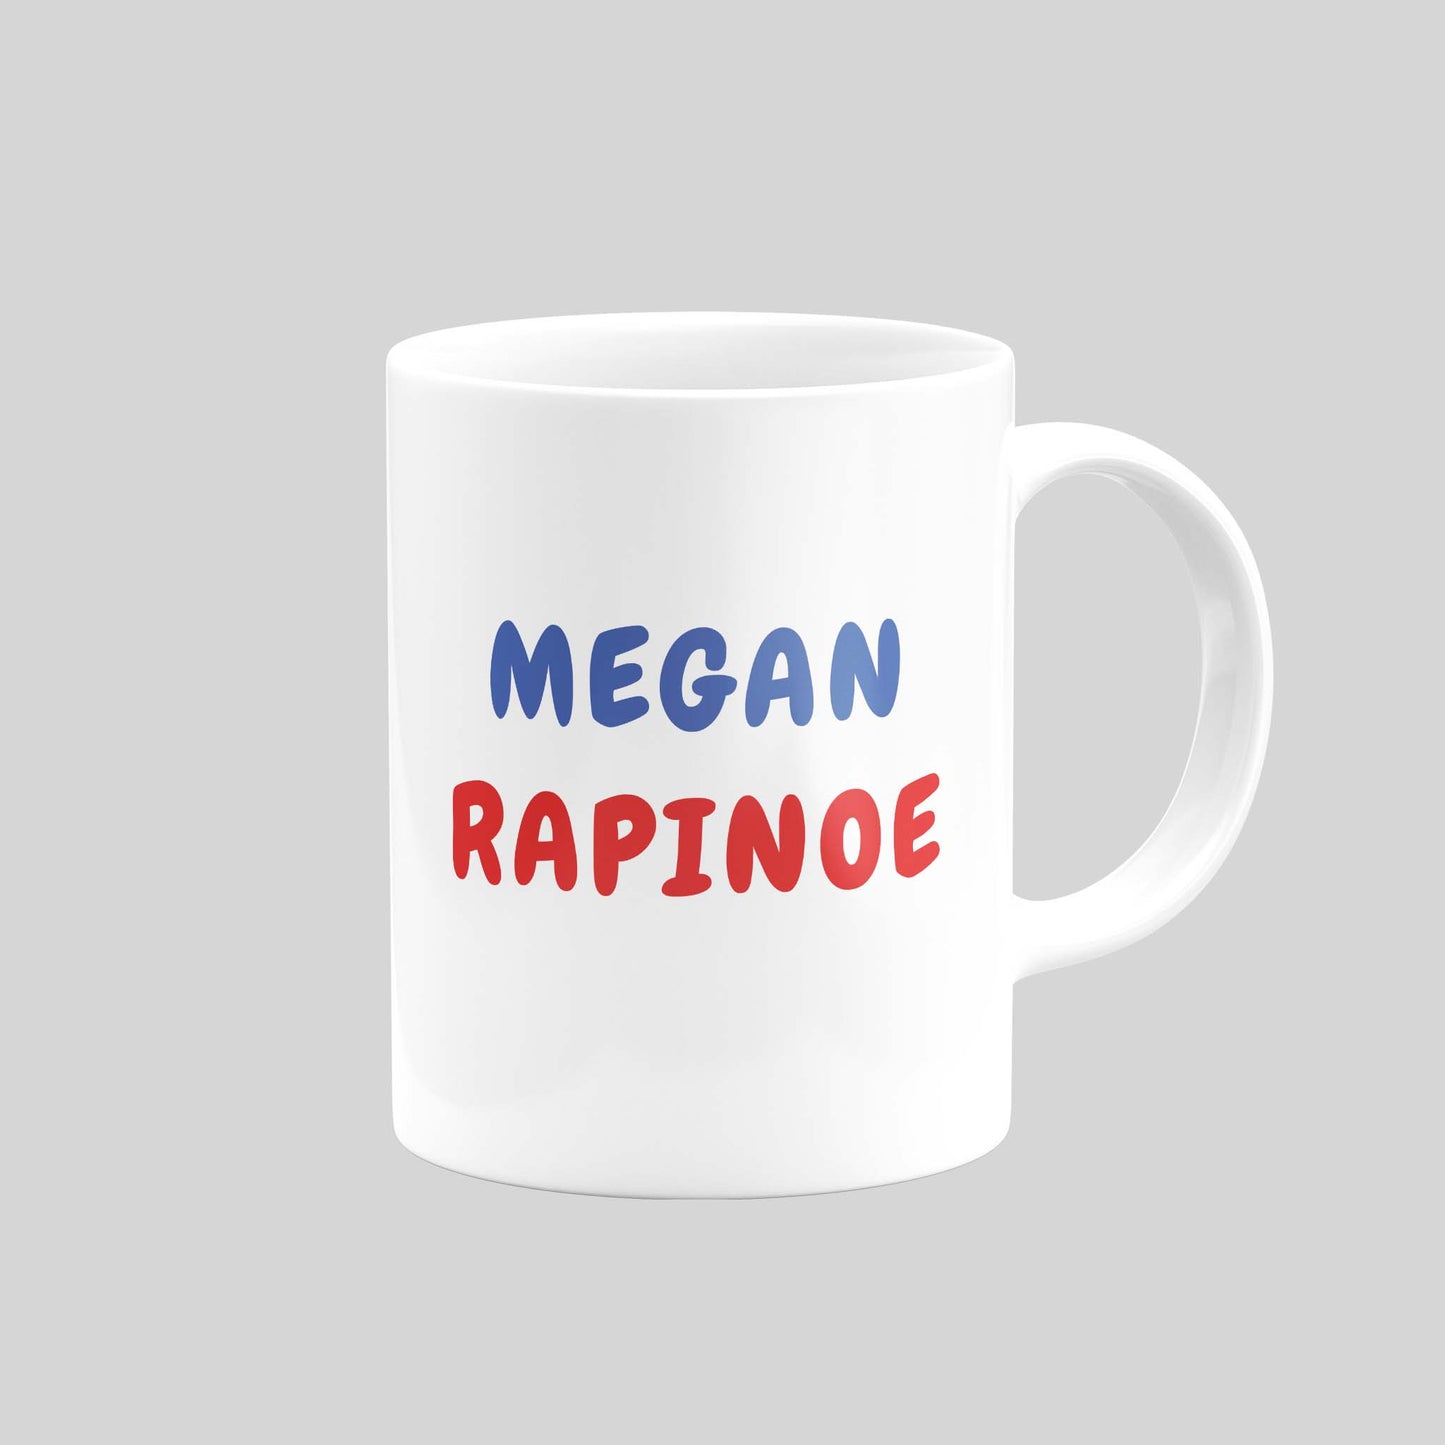 Megan Rapinoe Mug